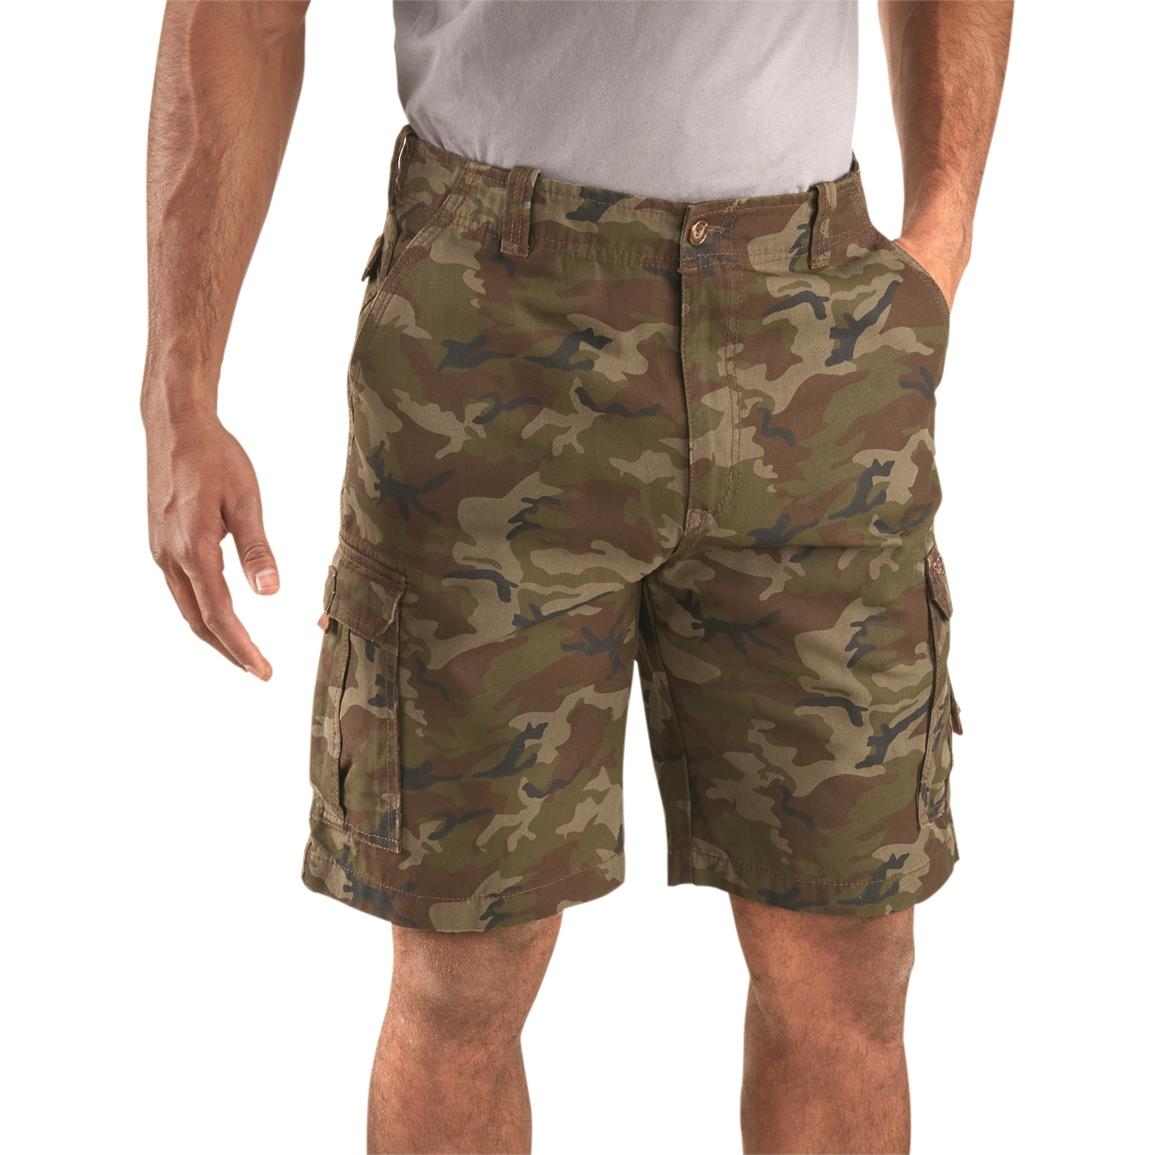 Guide Gear Men's Outdoor Cargo Shorts, Camo